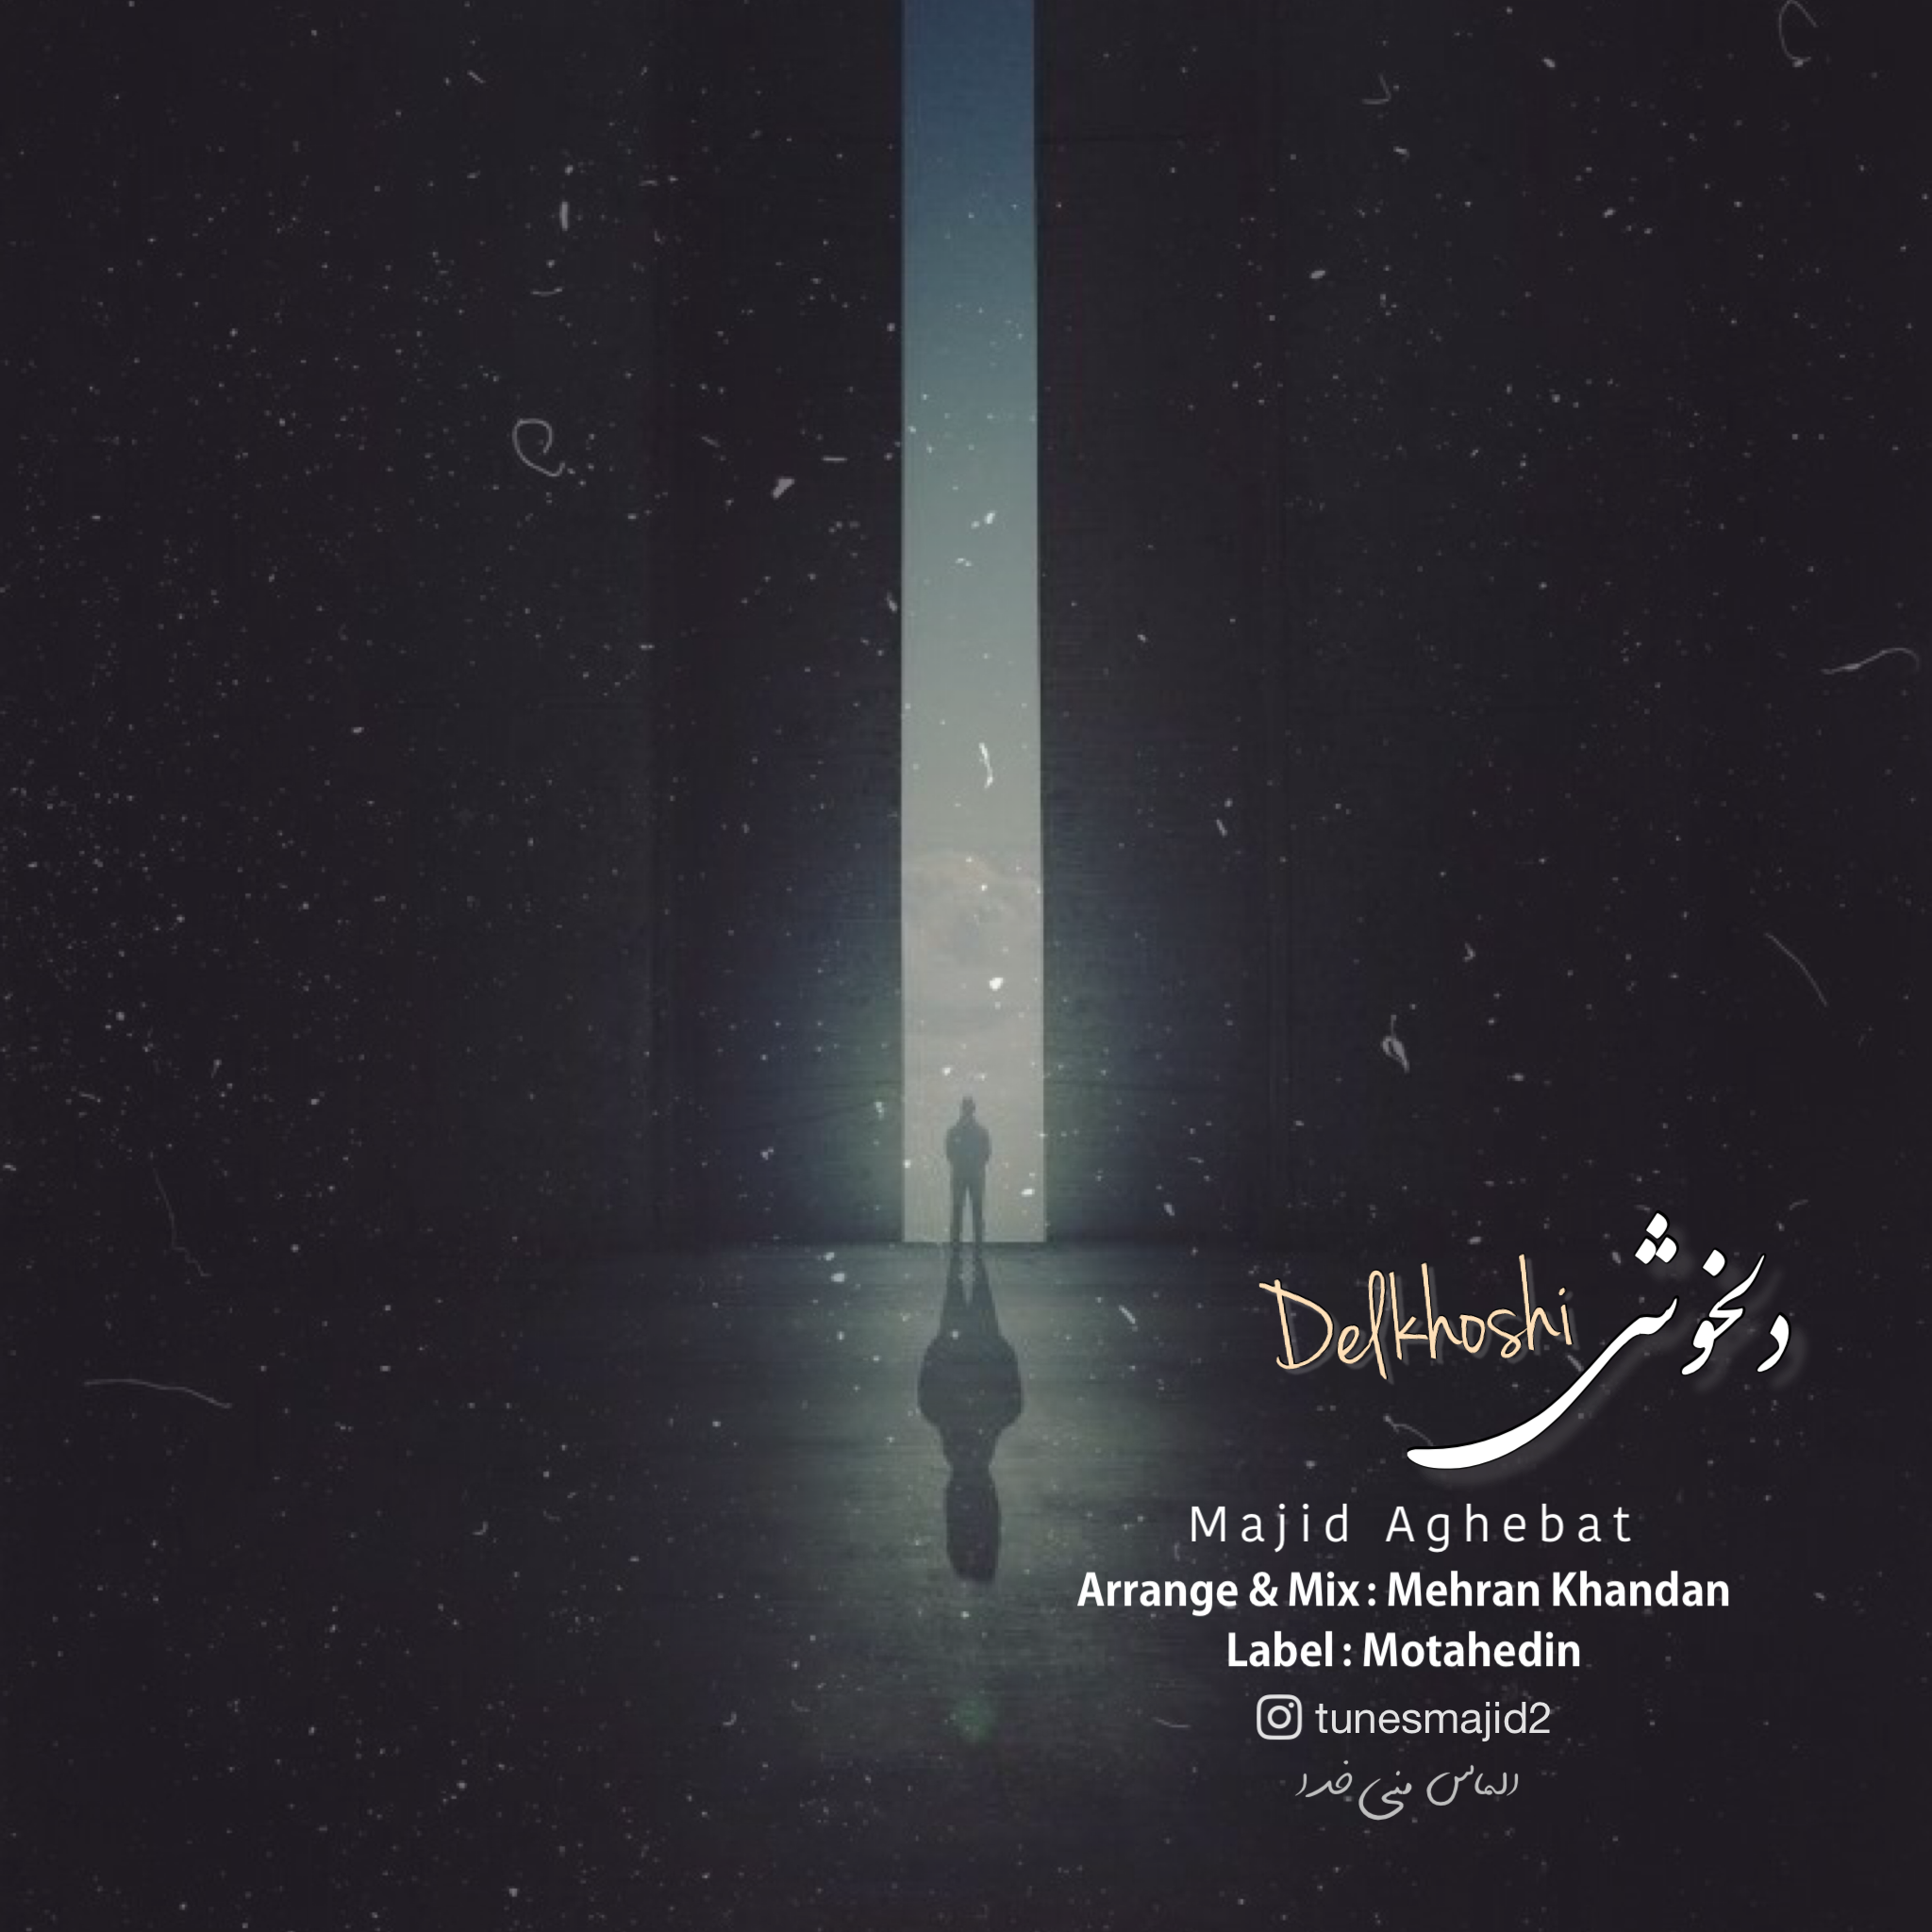  دانلود آهنگ جدید مجید عاقبت - دلخوشی | Download New Music By Majid Aghebat - Delkhoshi